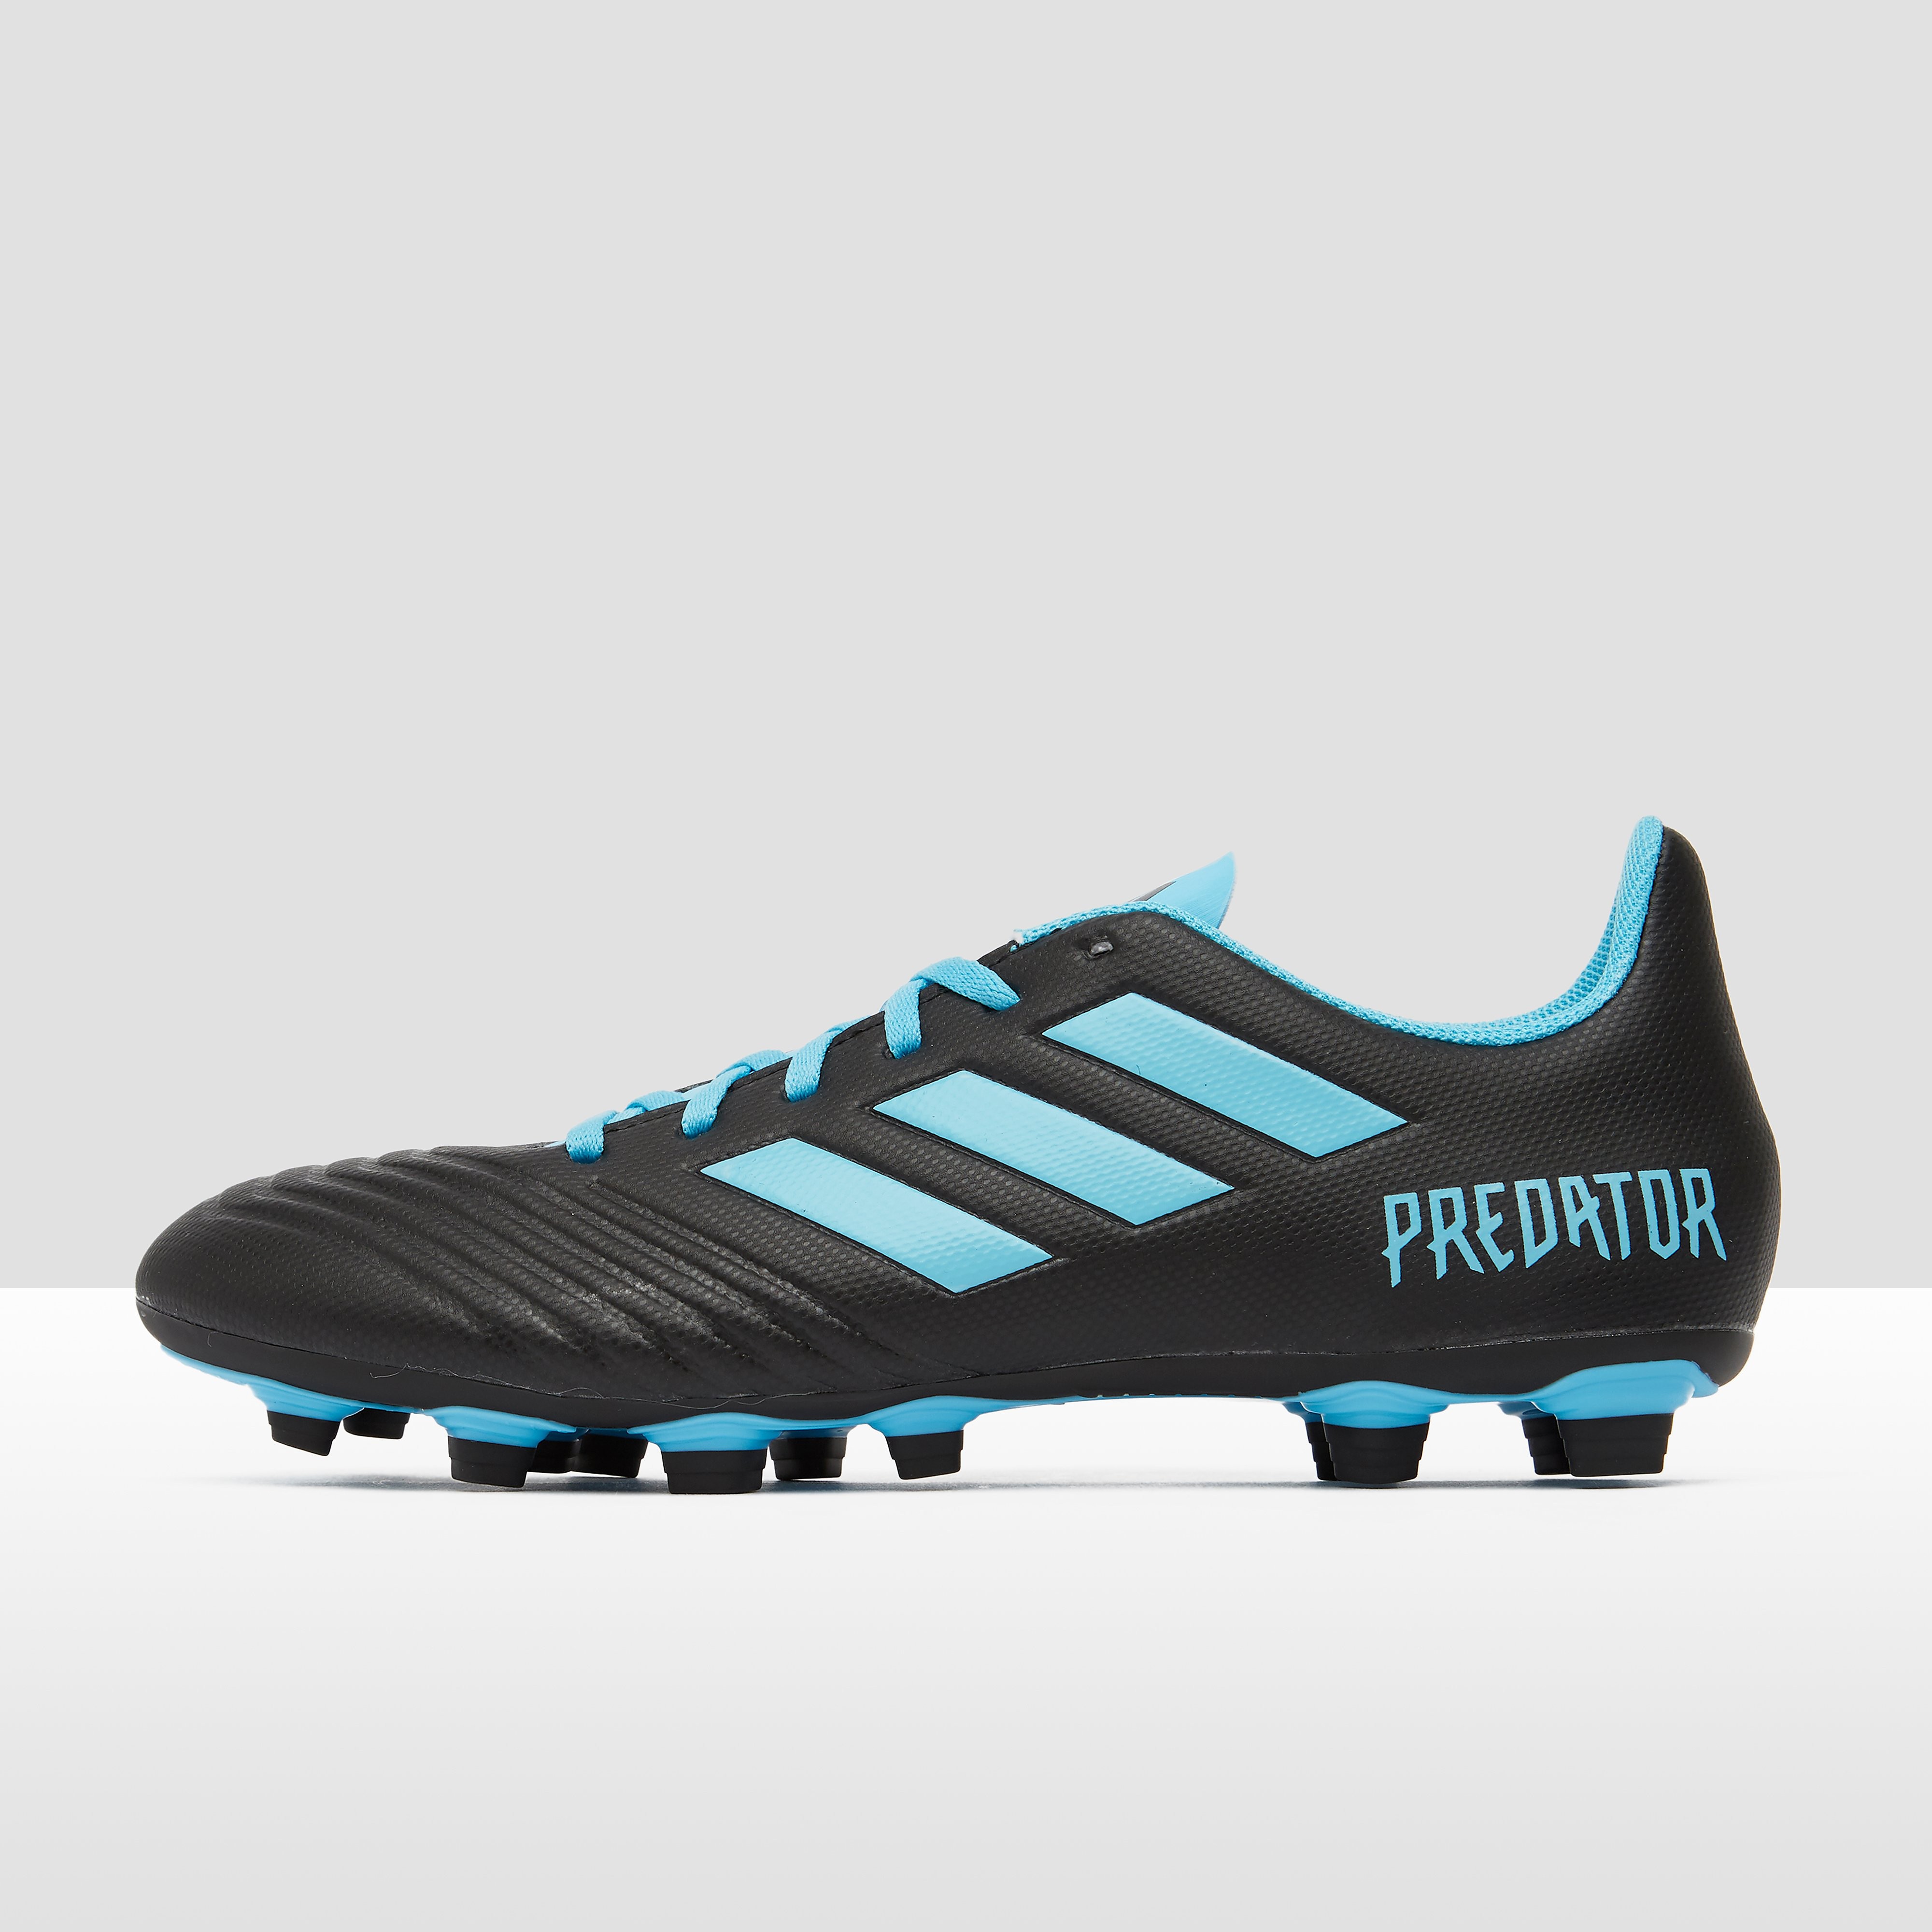 adidas Predator 19.4 fxg voetbalschoenen zwart/blauw Dames